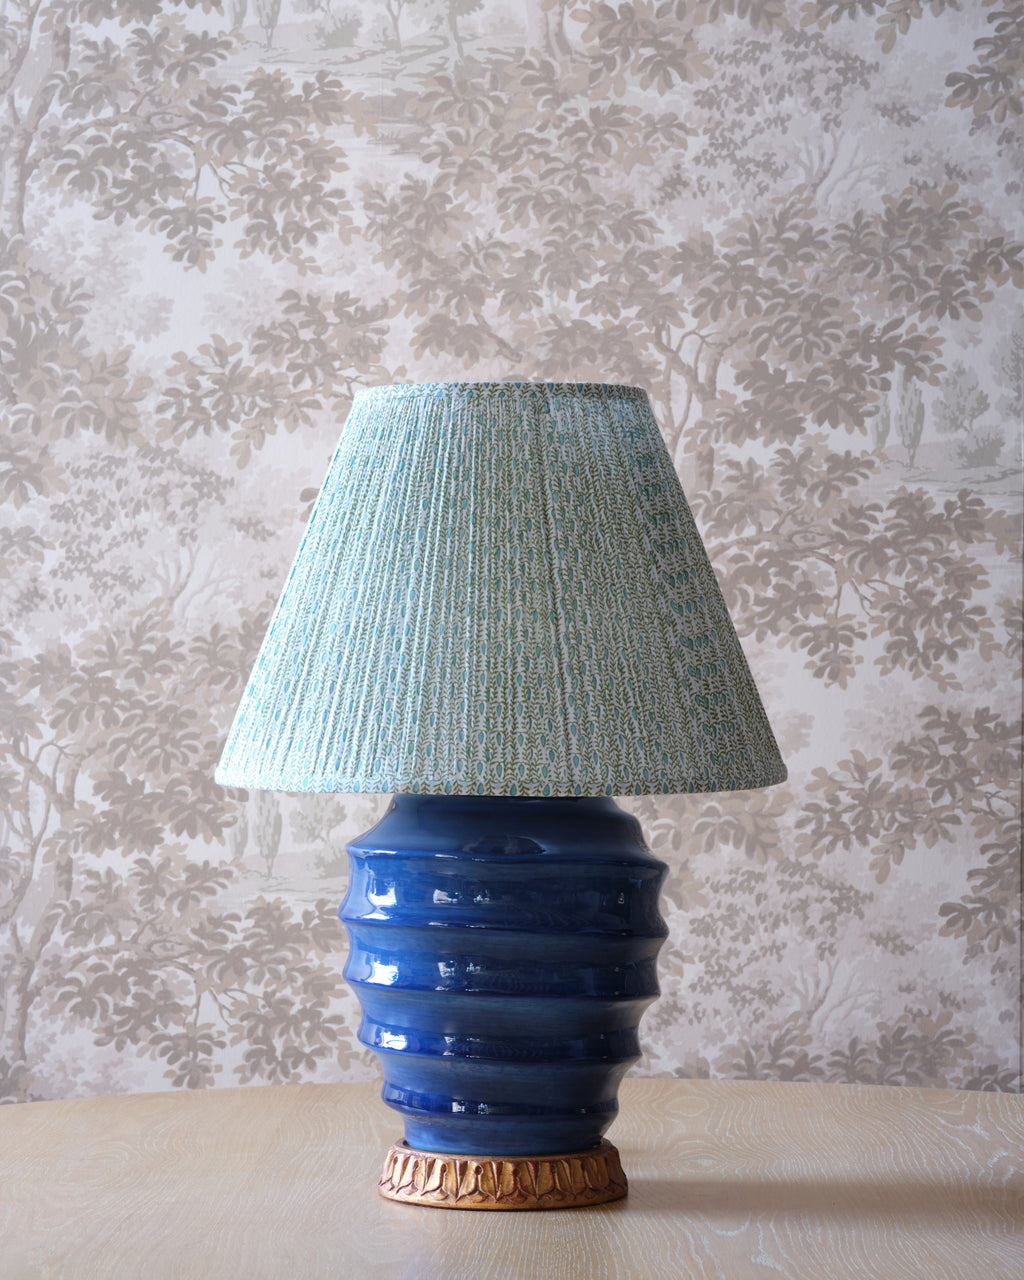 putnam lampshade (spring)